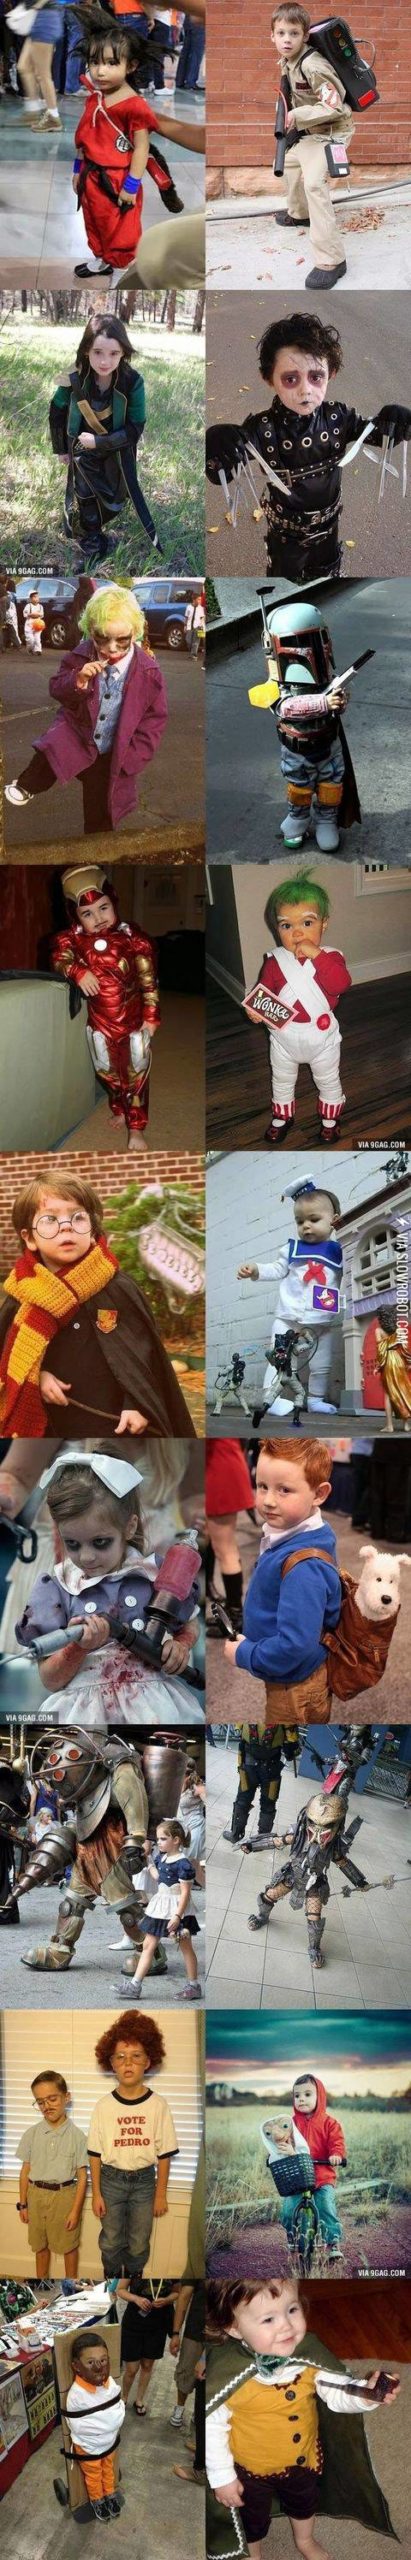 Kiddie+costumes.